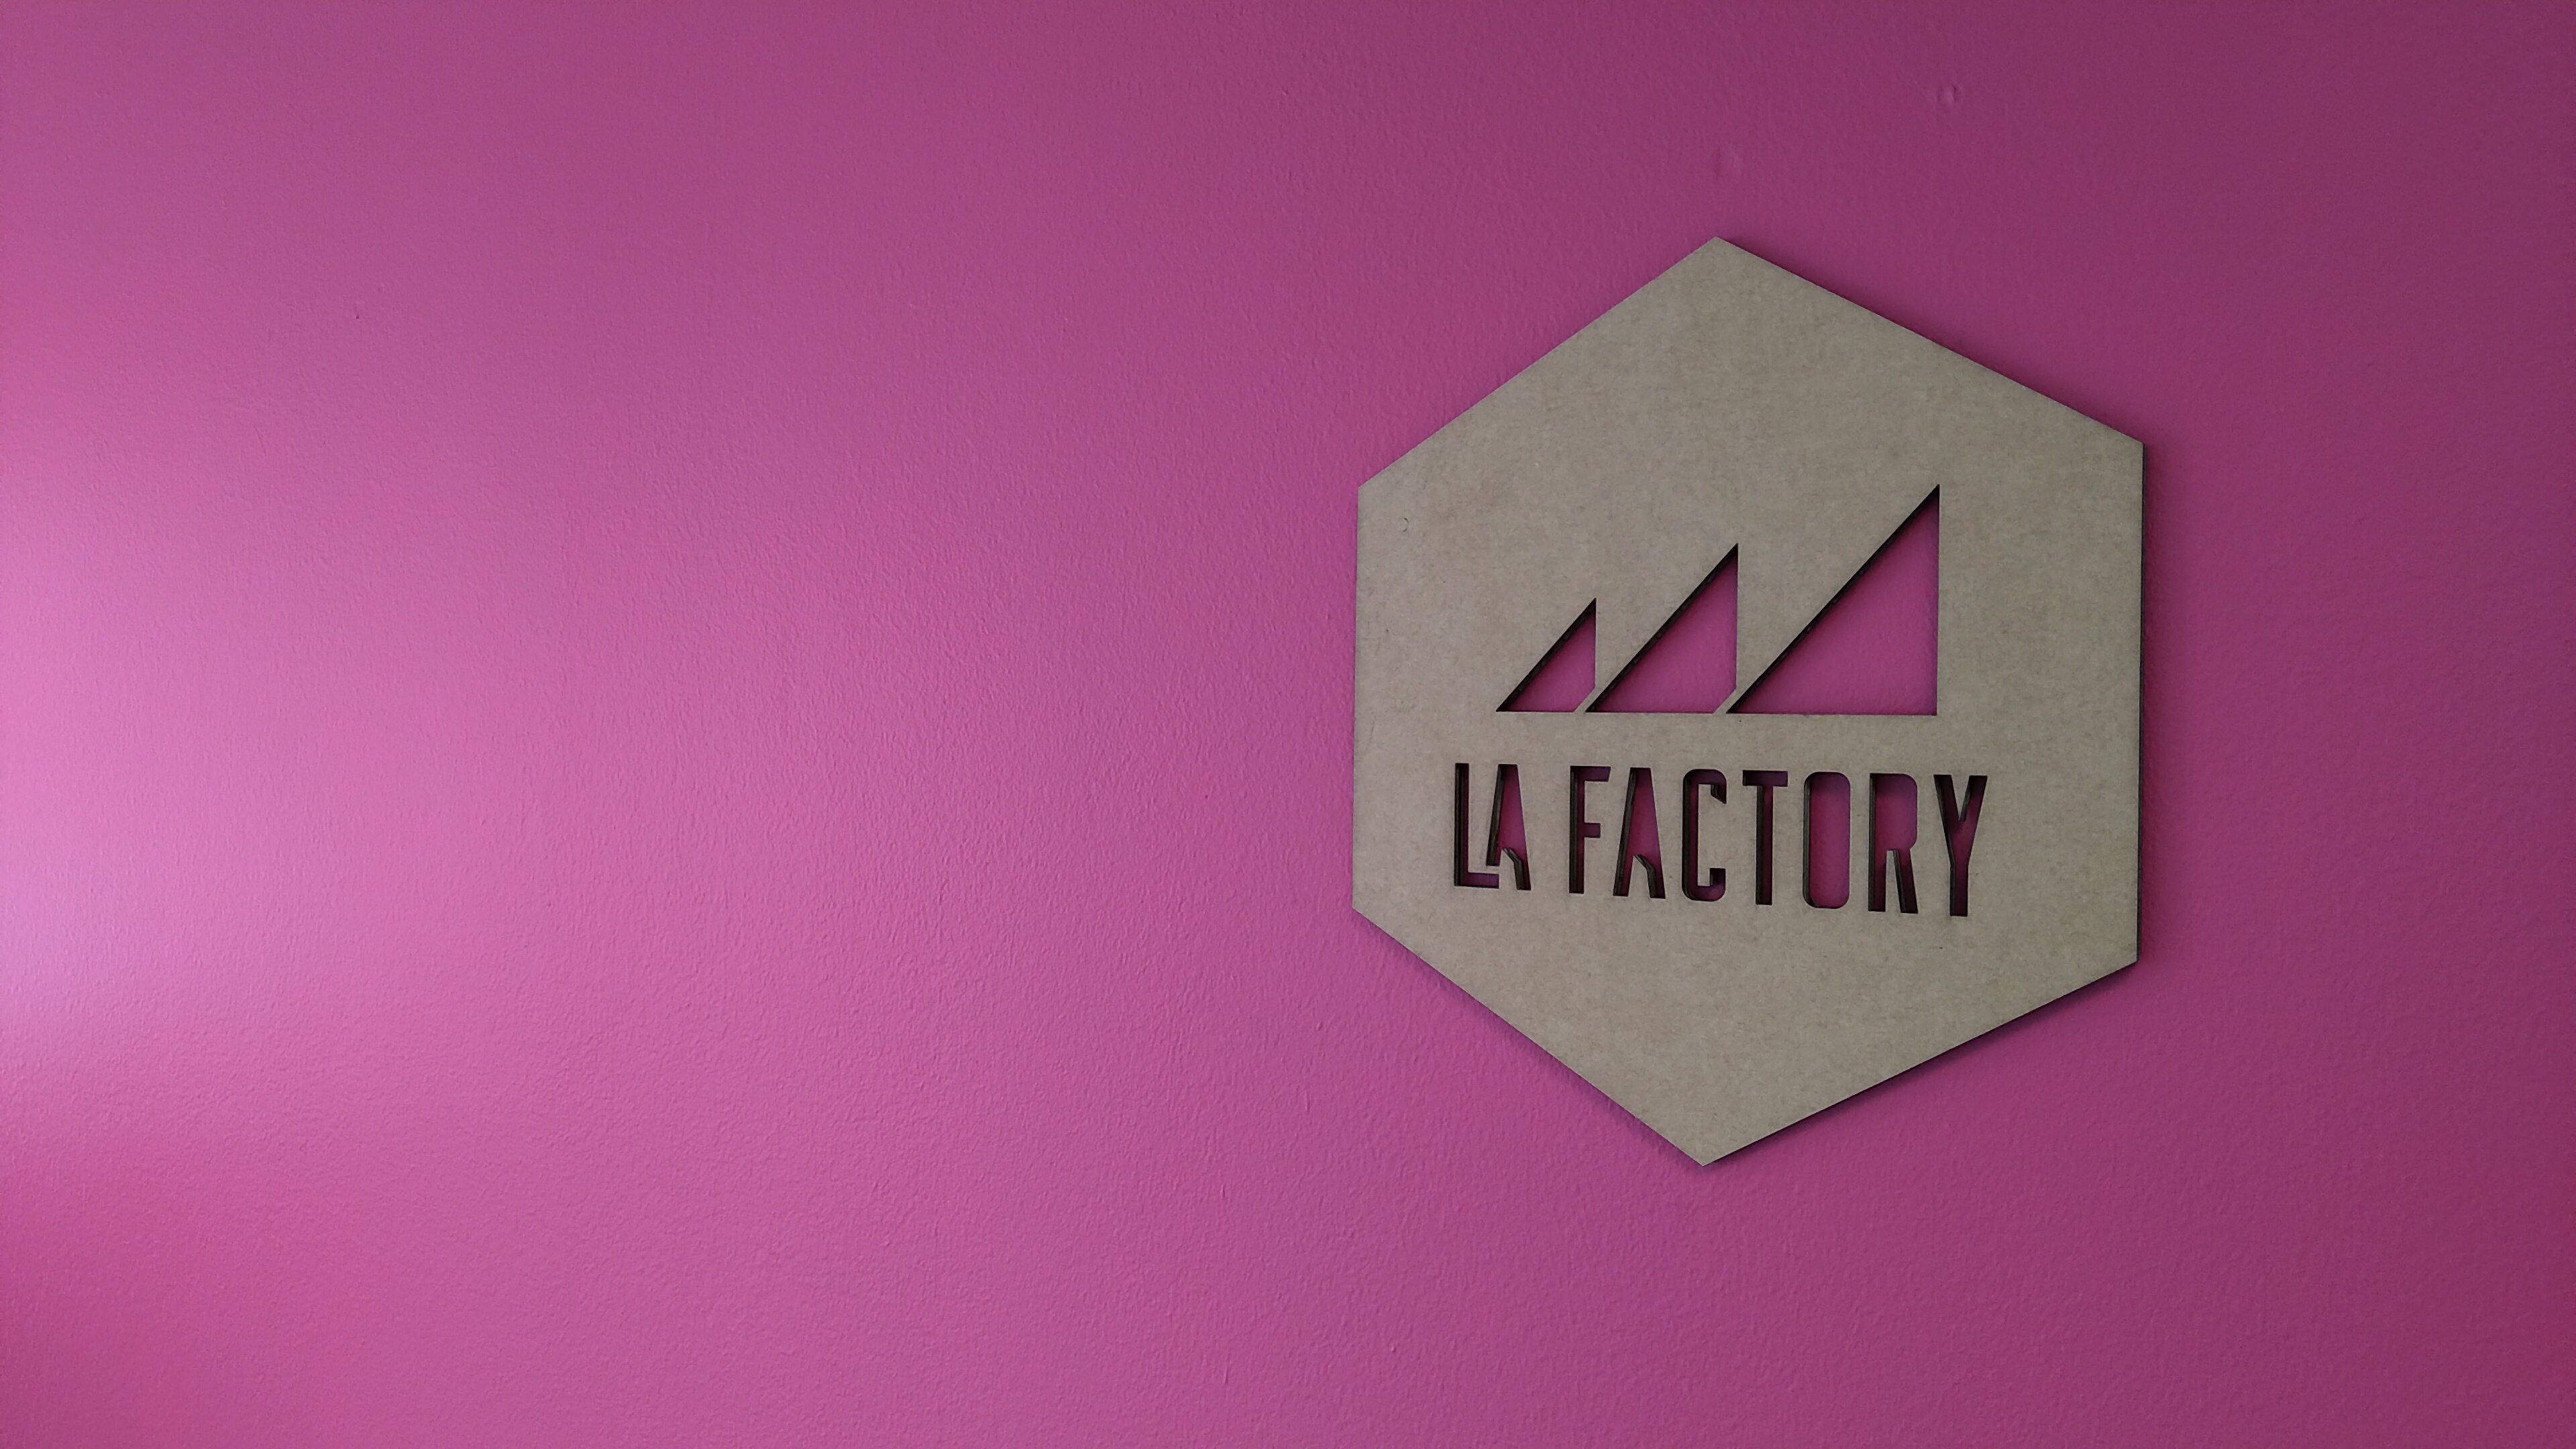 Group-La Factory by N7 IMG 20200604 125210.jpg